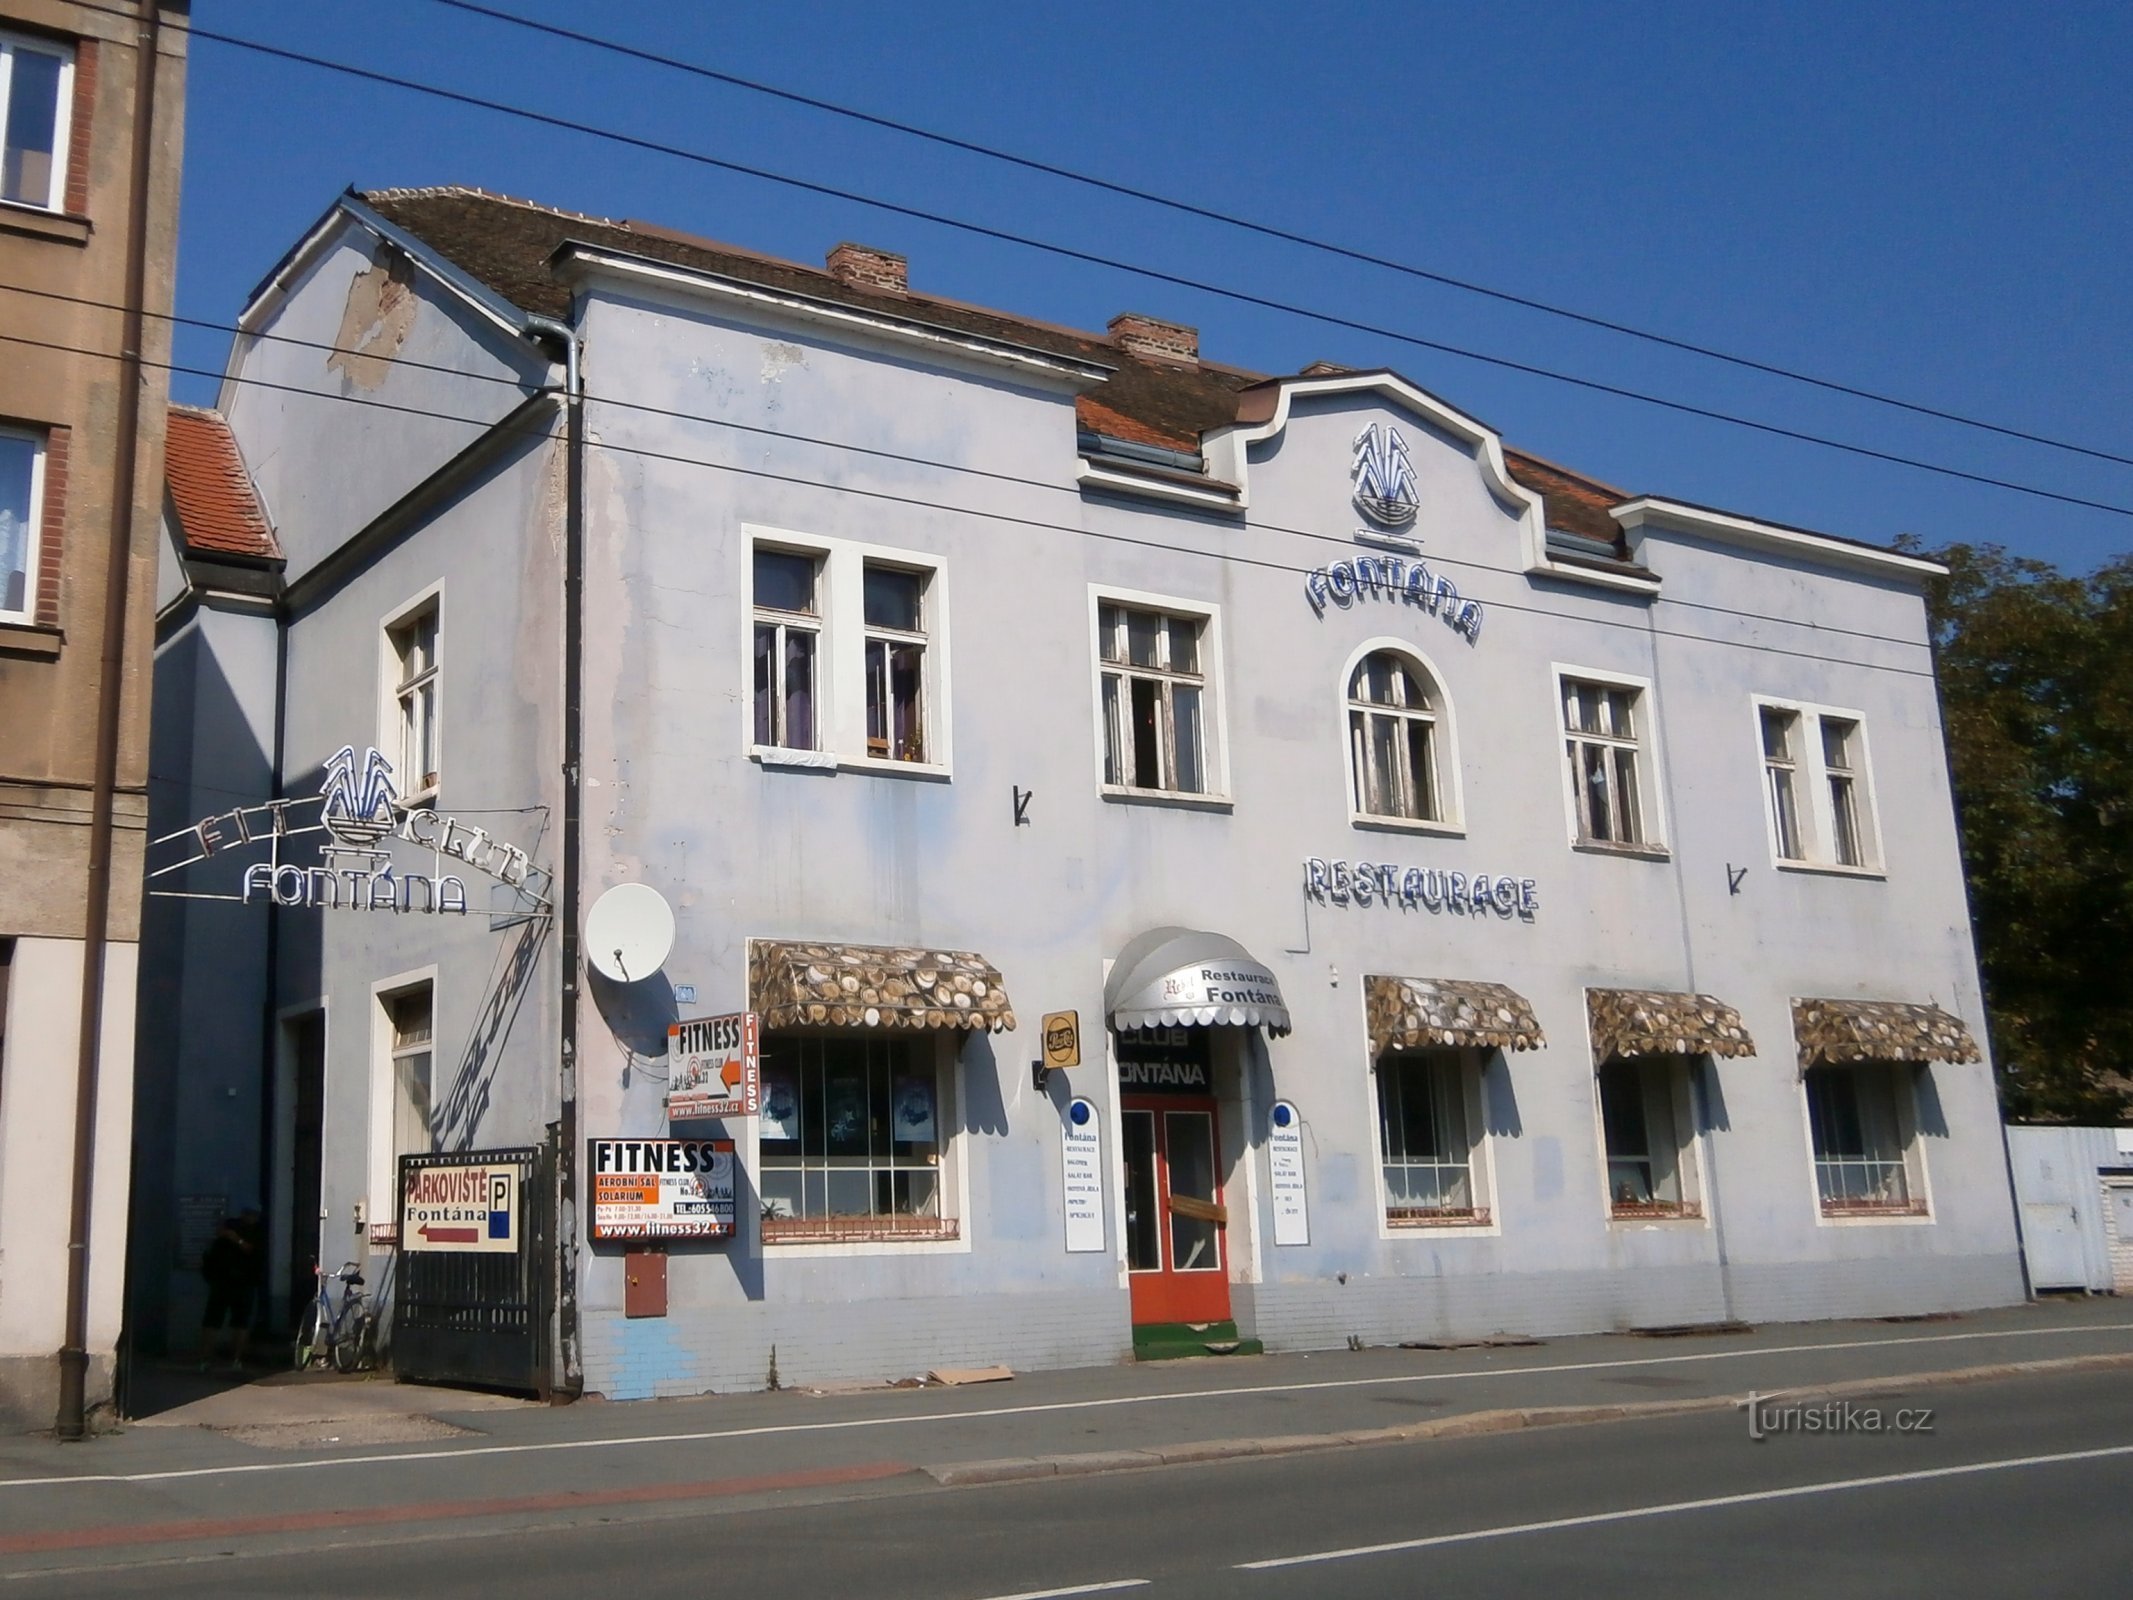 Restaurace Fontána (Hradec Králové, 17.9.2014)